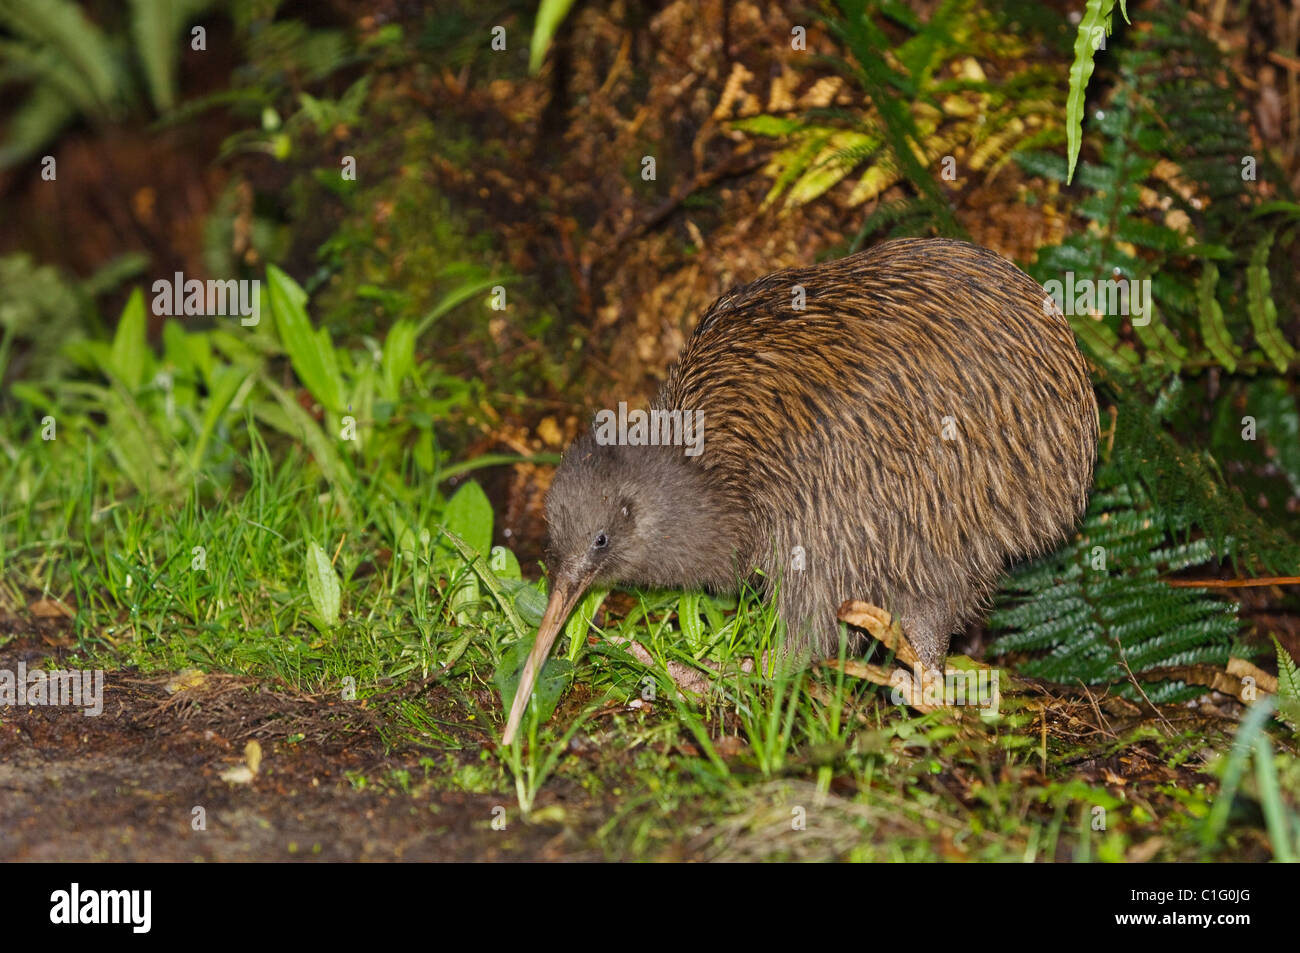 South Island brown kiwi (Apteryx australis), Stewart Island, New Zealand. Stock Photo